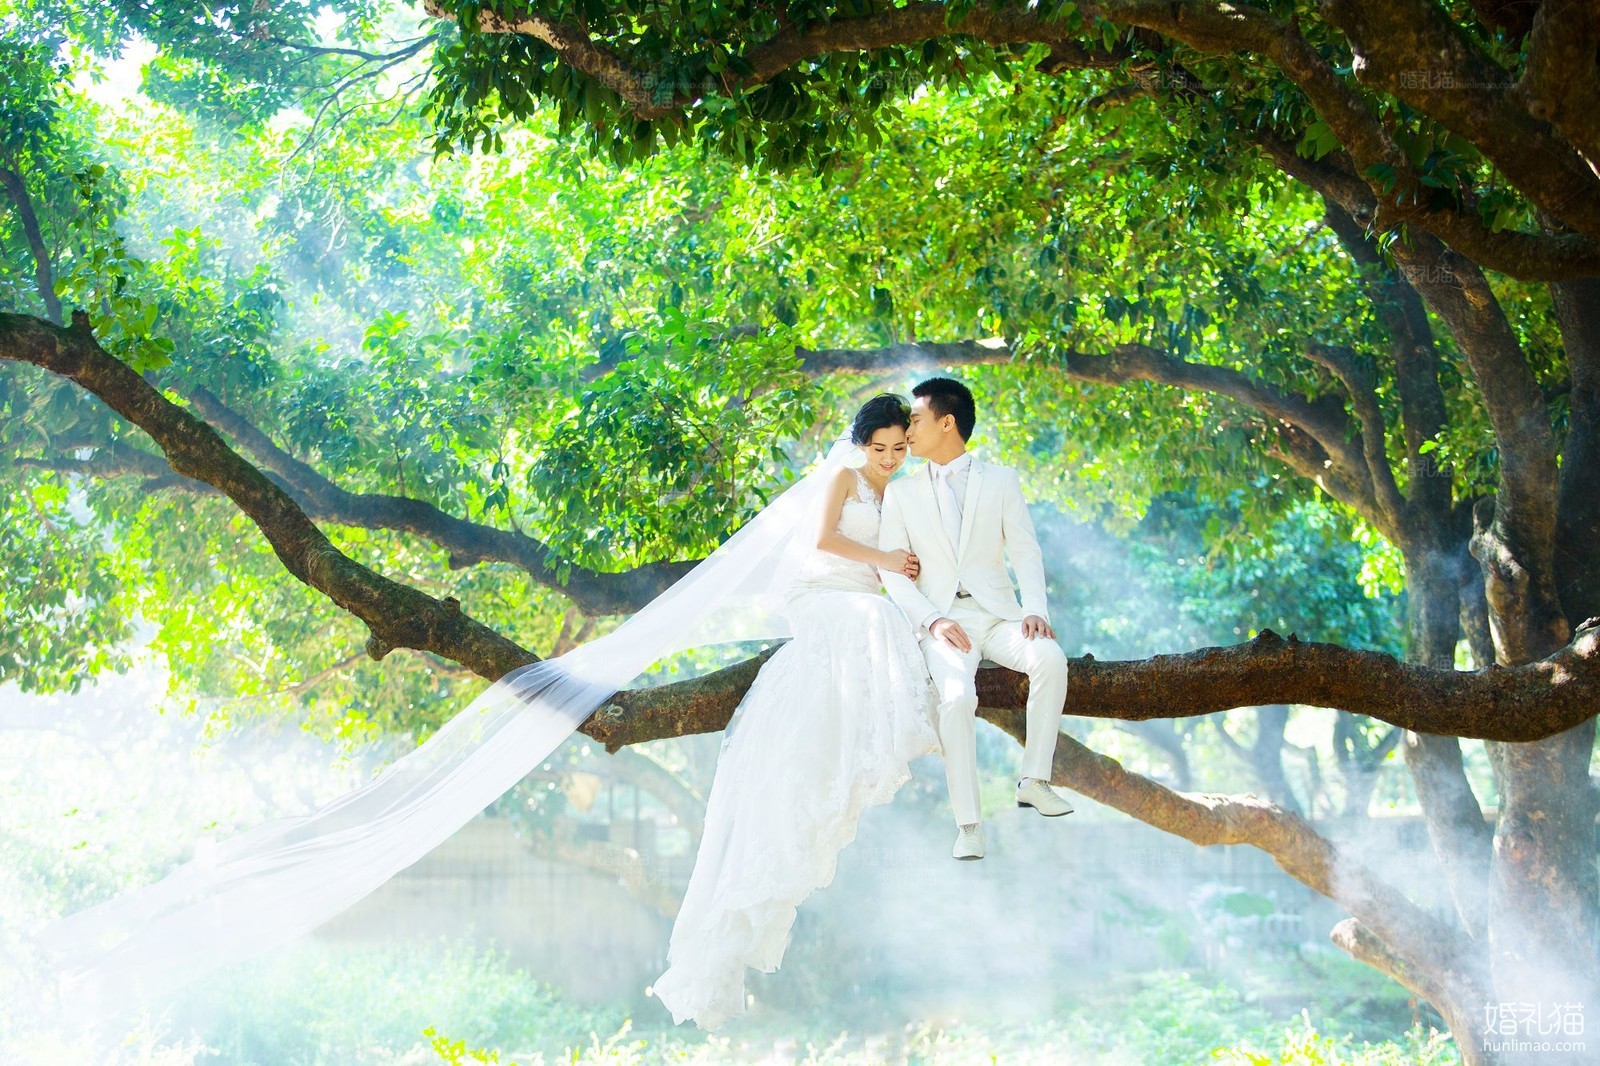 自然清新婚纱照图片|园林结婚照,[自然清新, 园林],深圳婚纱照,婚纱照图片